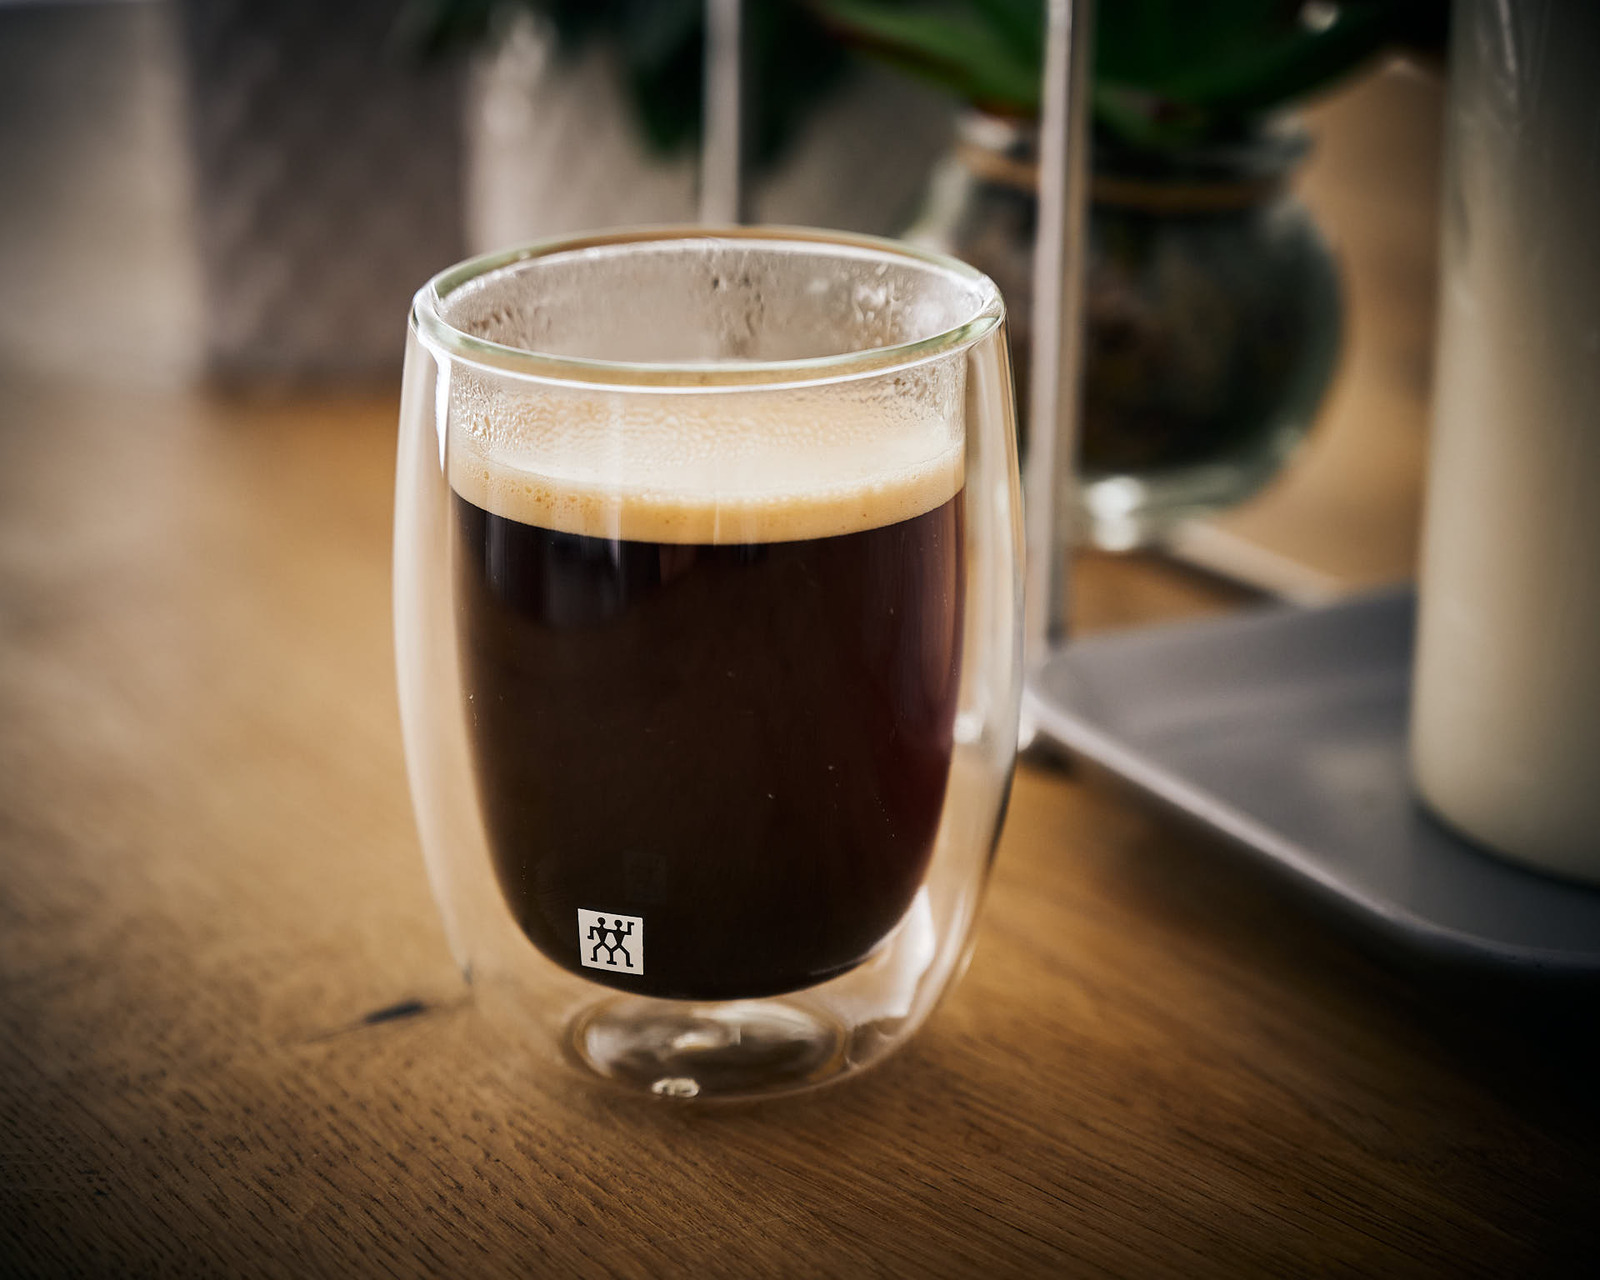 Lecker Kaffee im doppelwandigen Glasbecher.